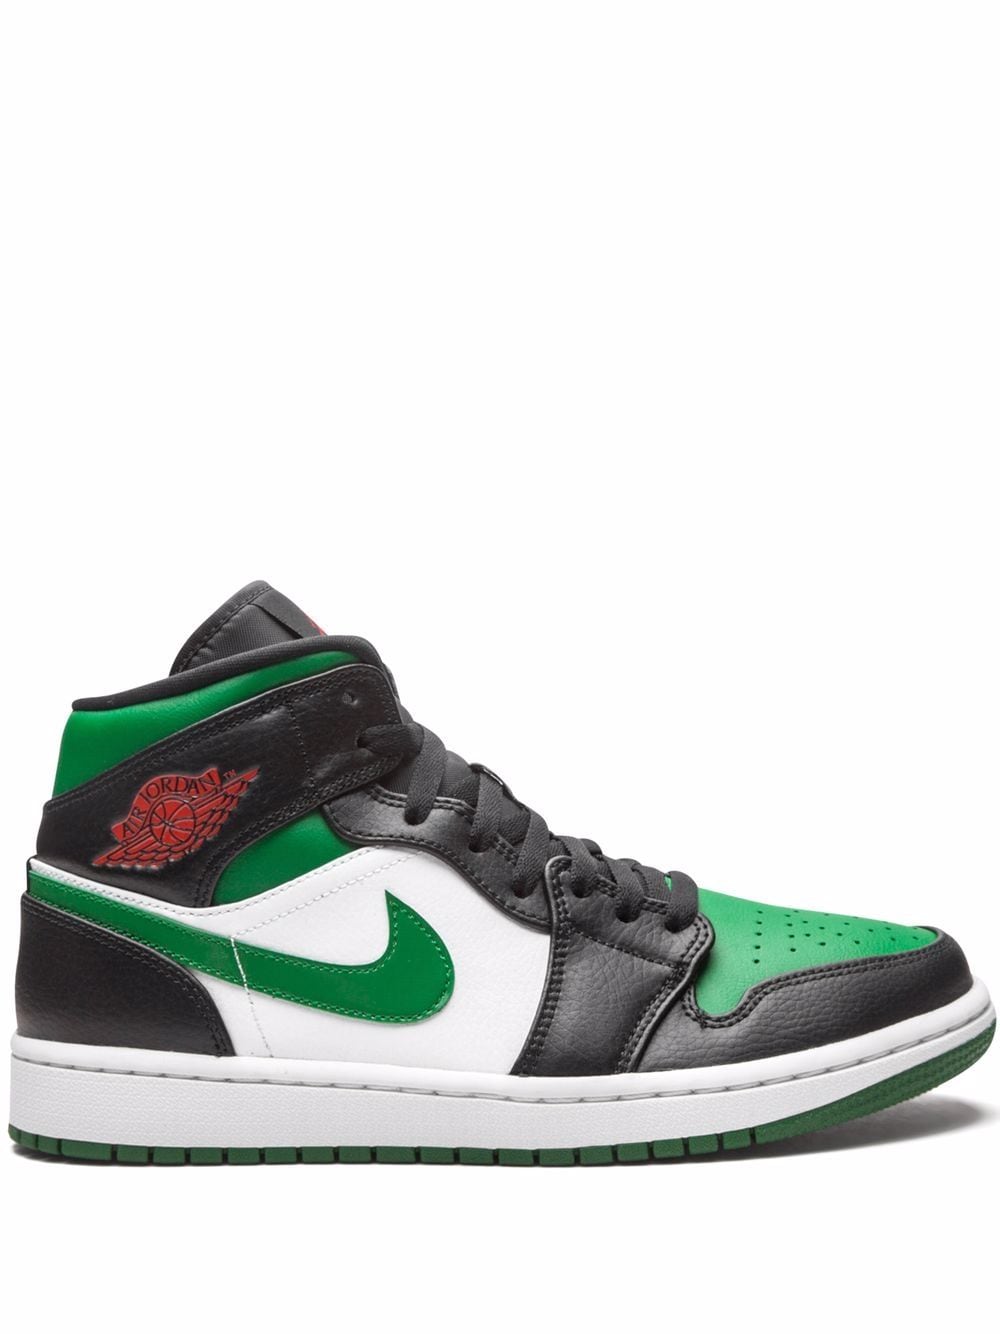 Jordan Air Jordan 1 Mid "Green Toe" sneakers - Black